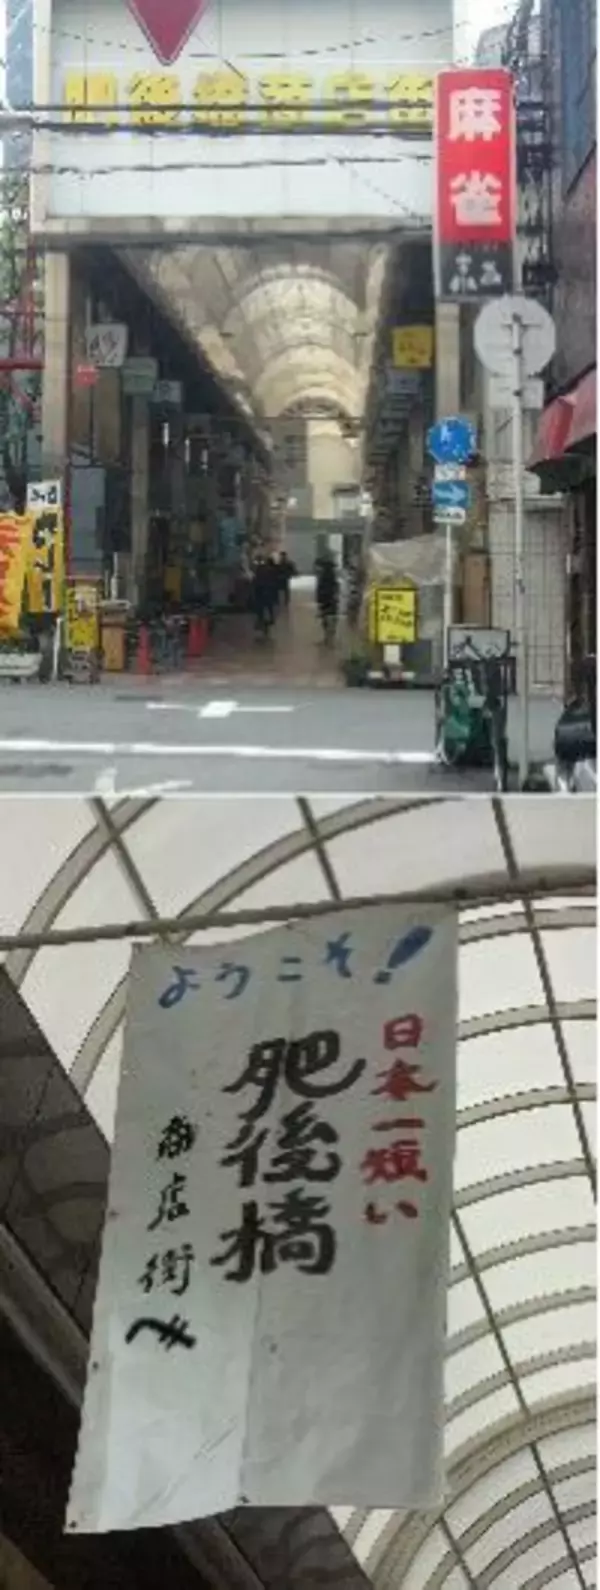 踏破およそ1分。“日本一短い商店街”を体験する